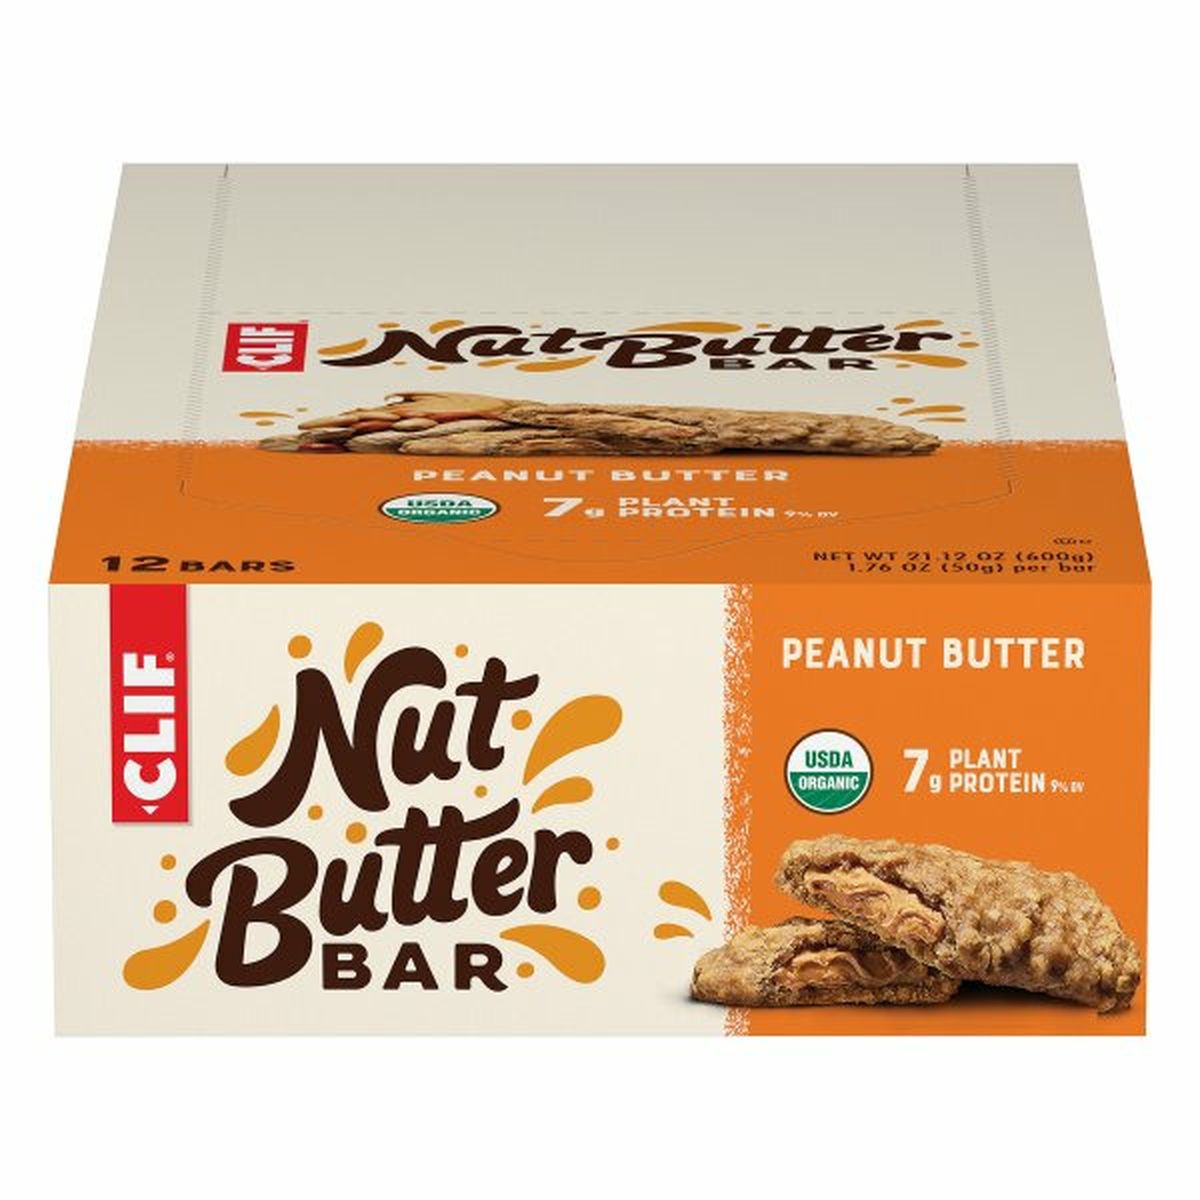 Calories in CLIF BAR Nut Butter Bar, Peanut Butter, 12 Pack